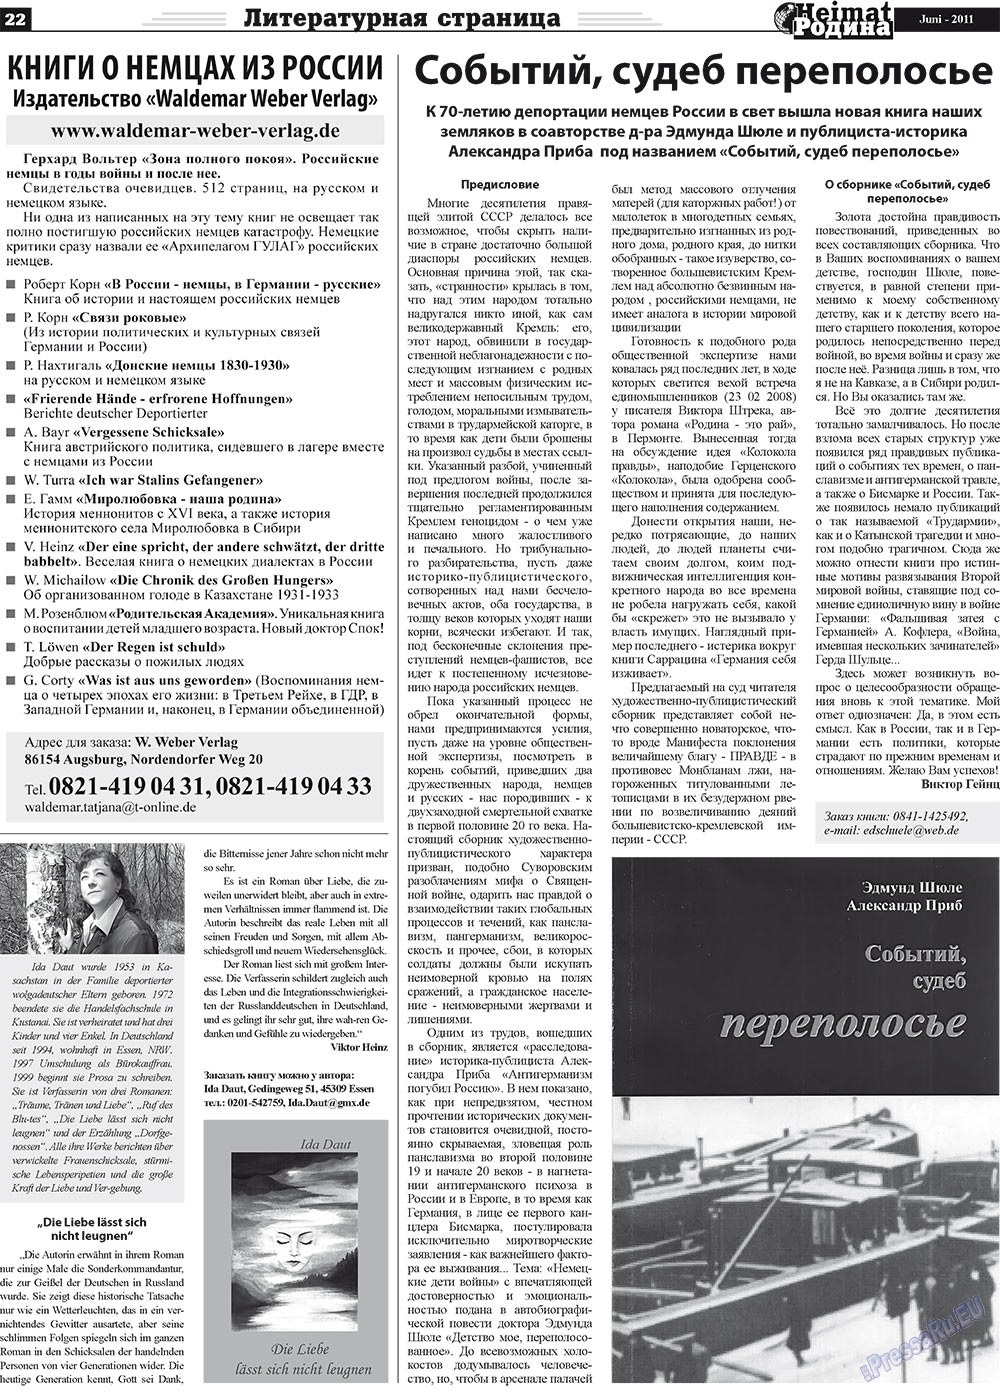 Heimat-Родина (газета). 2011 год, номер 6, стр. 22